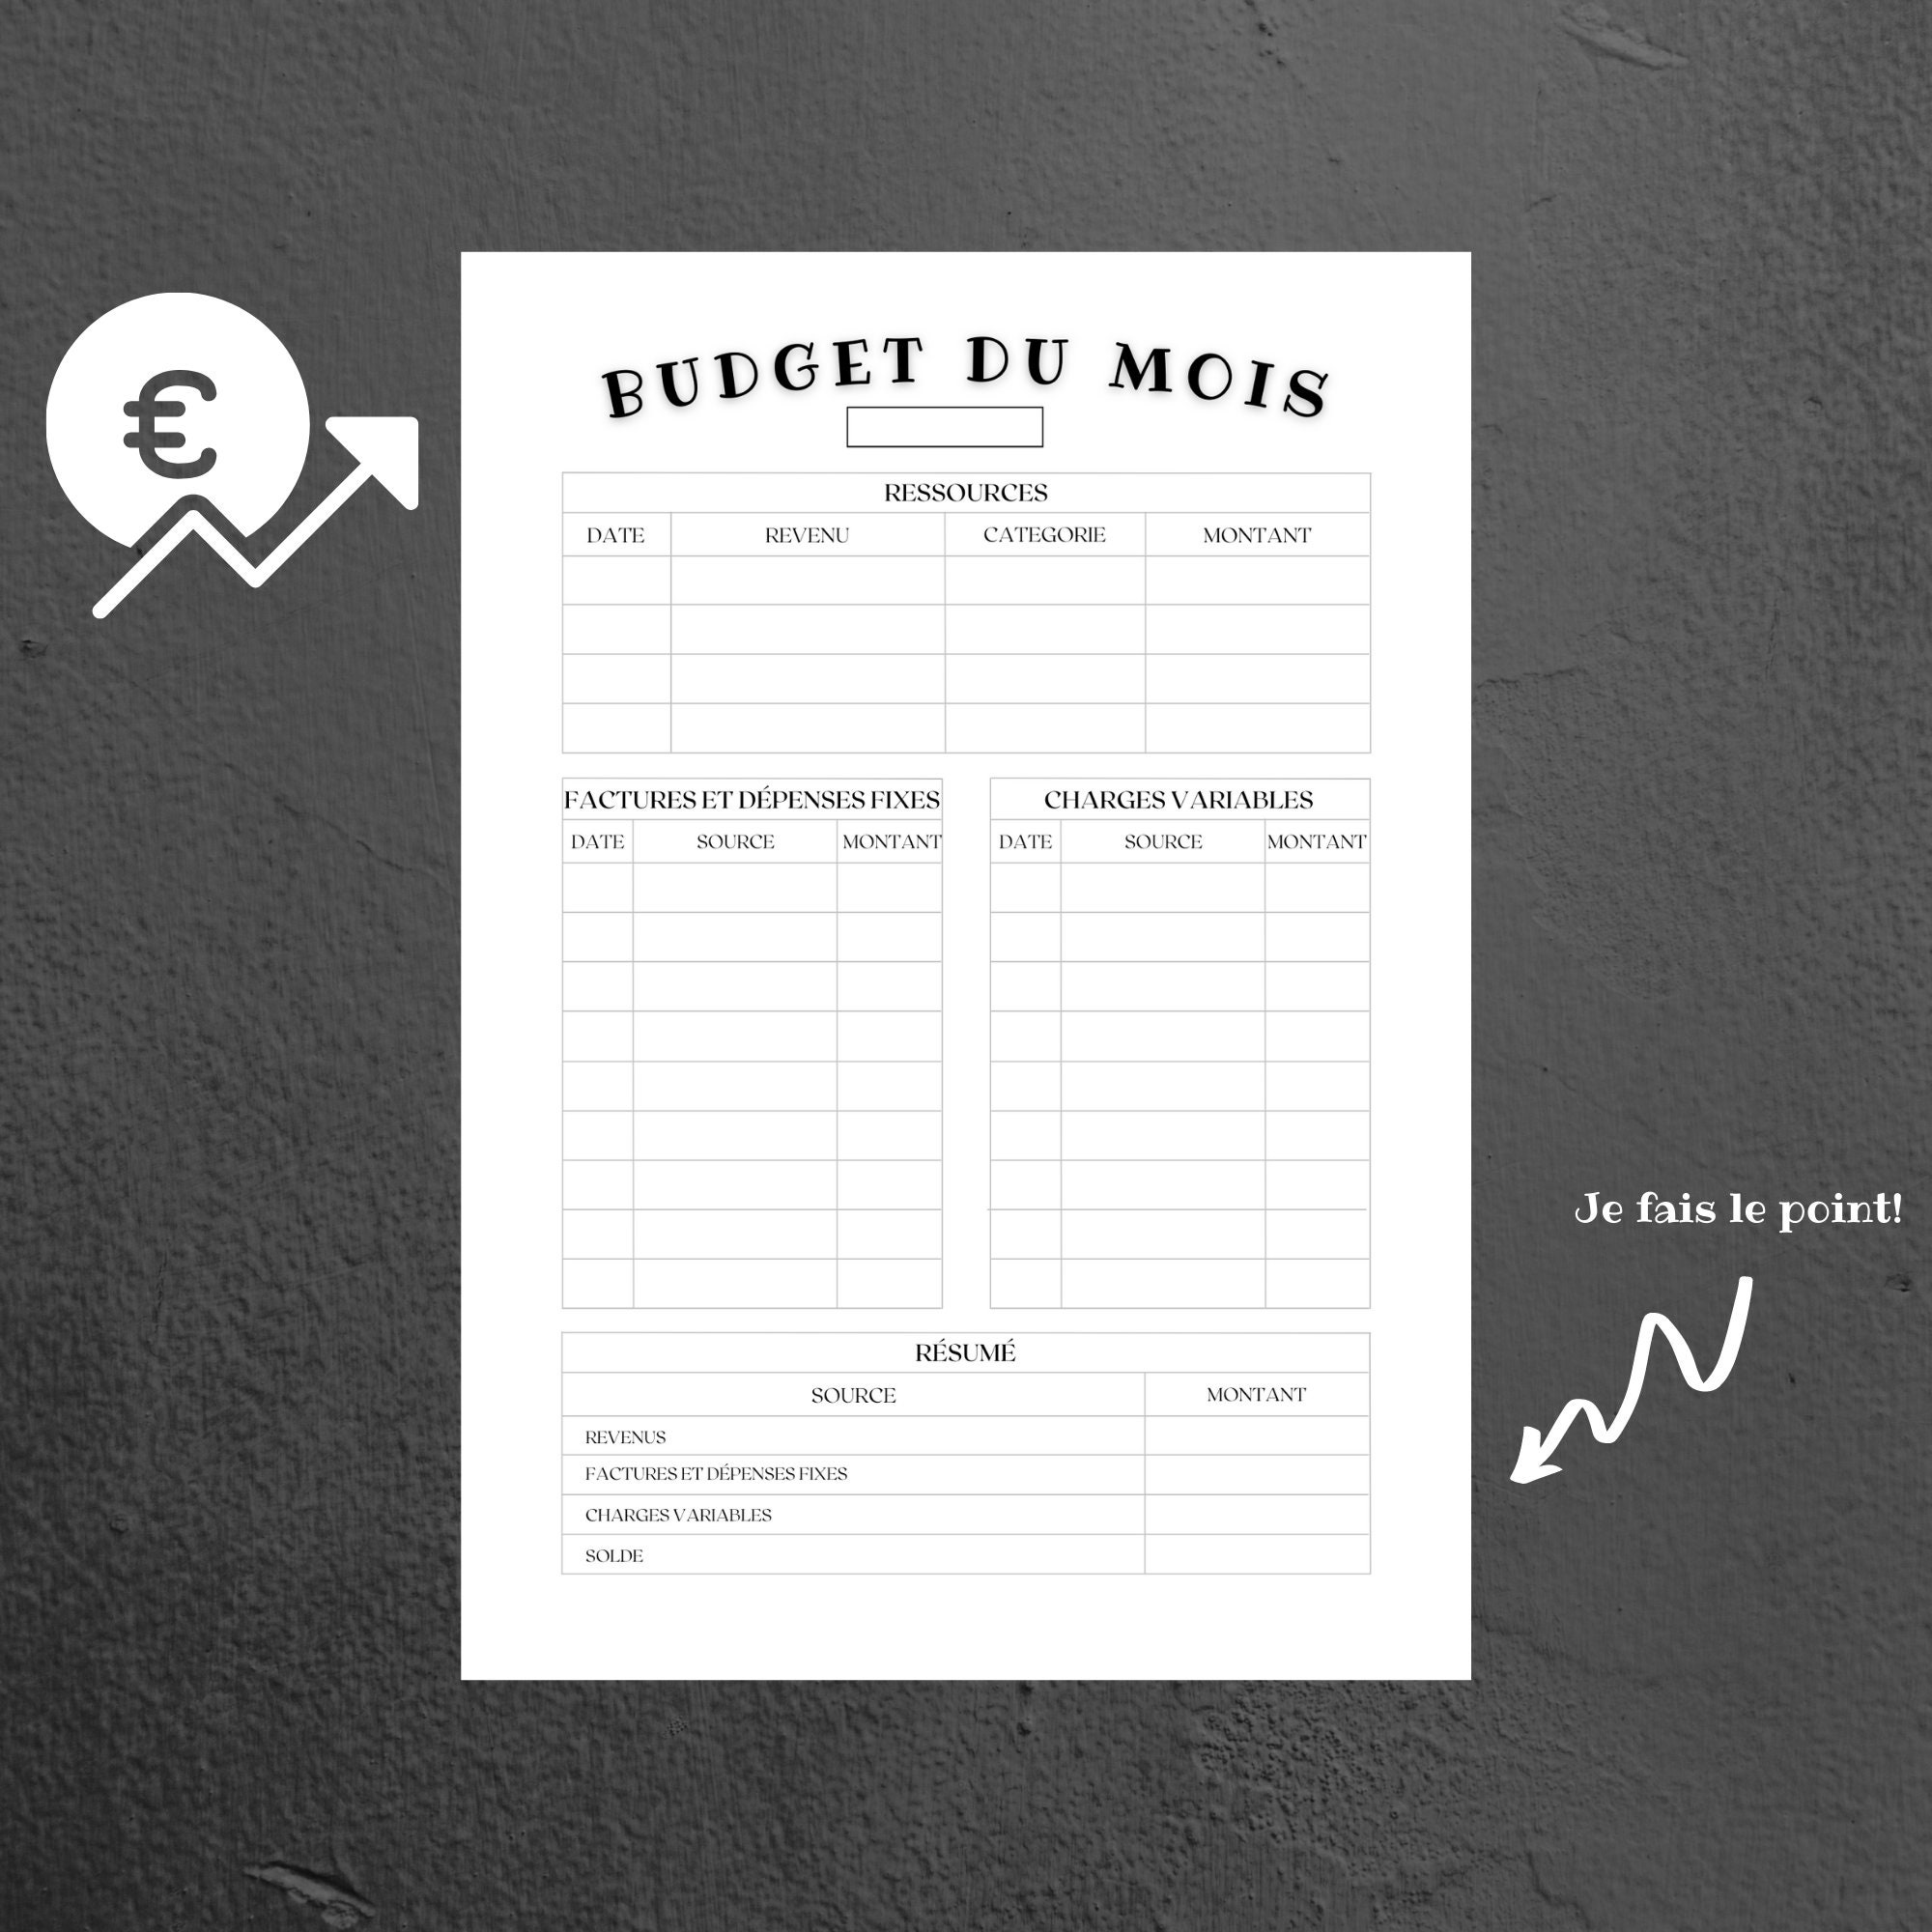 Faire son budget dans un carnet bujo ✨ Budget mensuel gratuit ! 